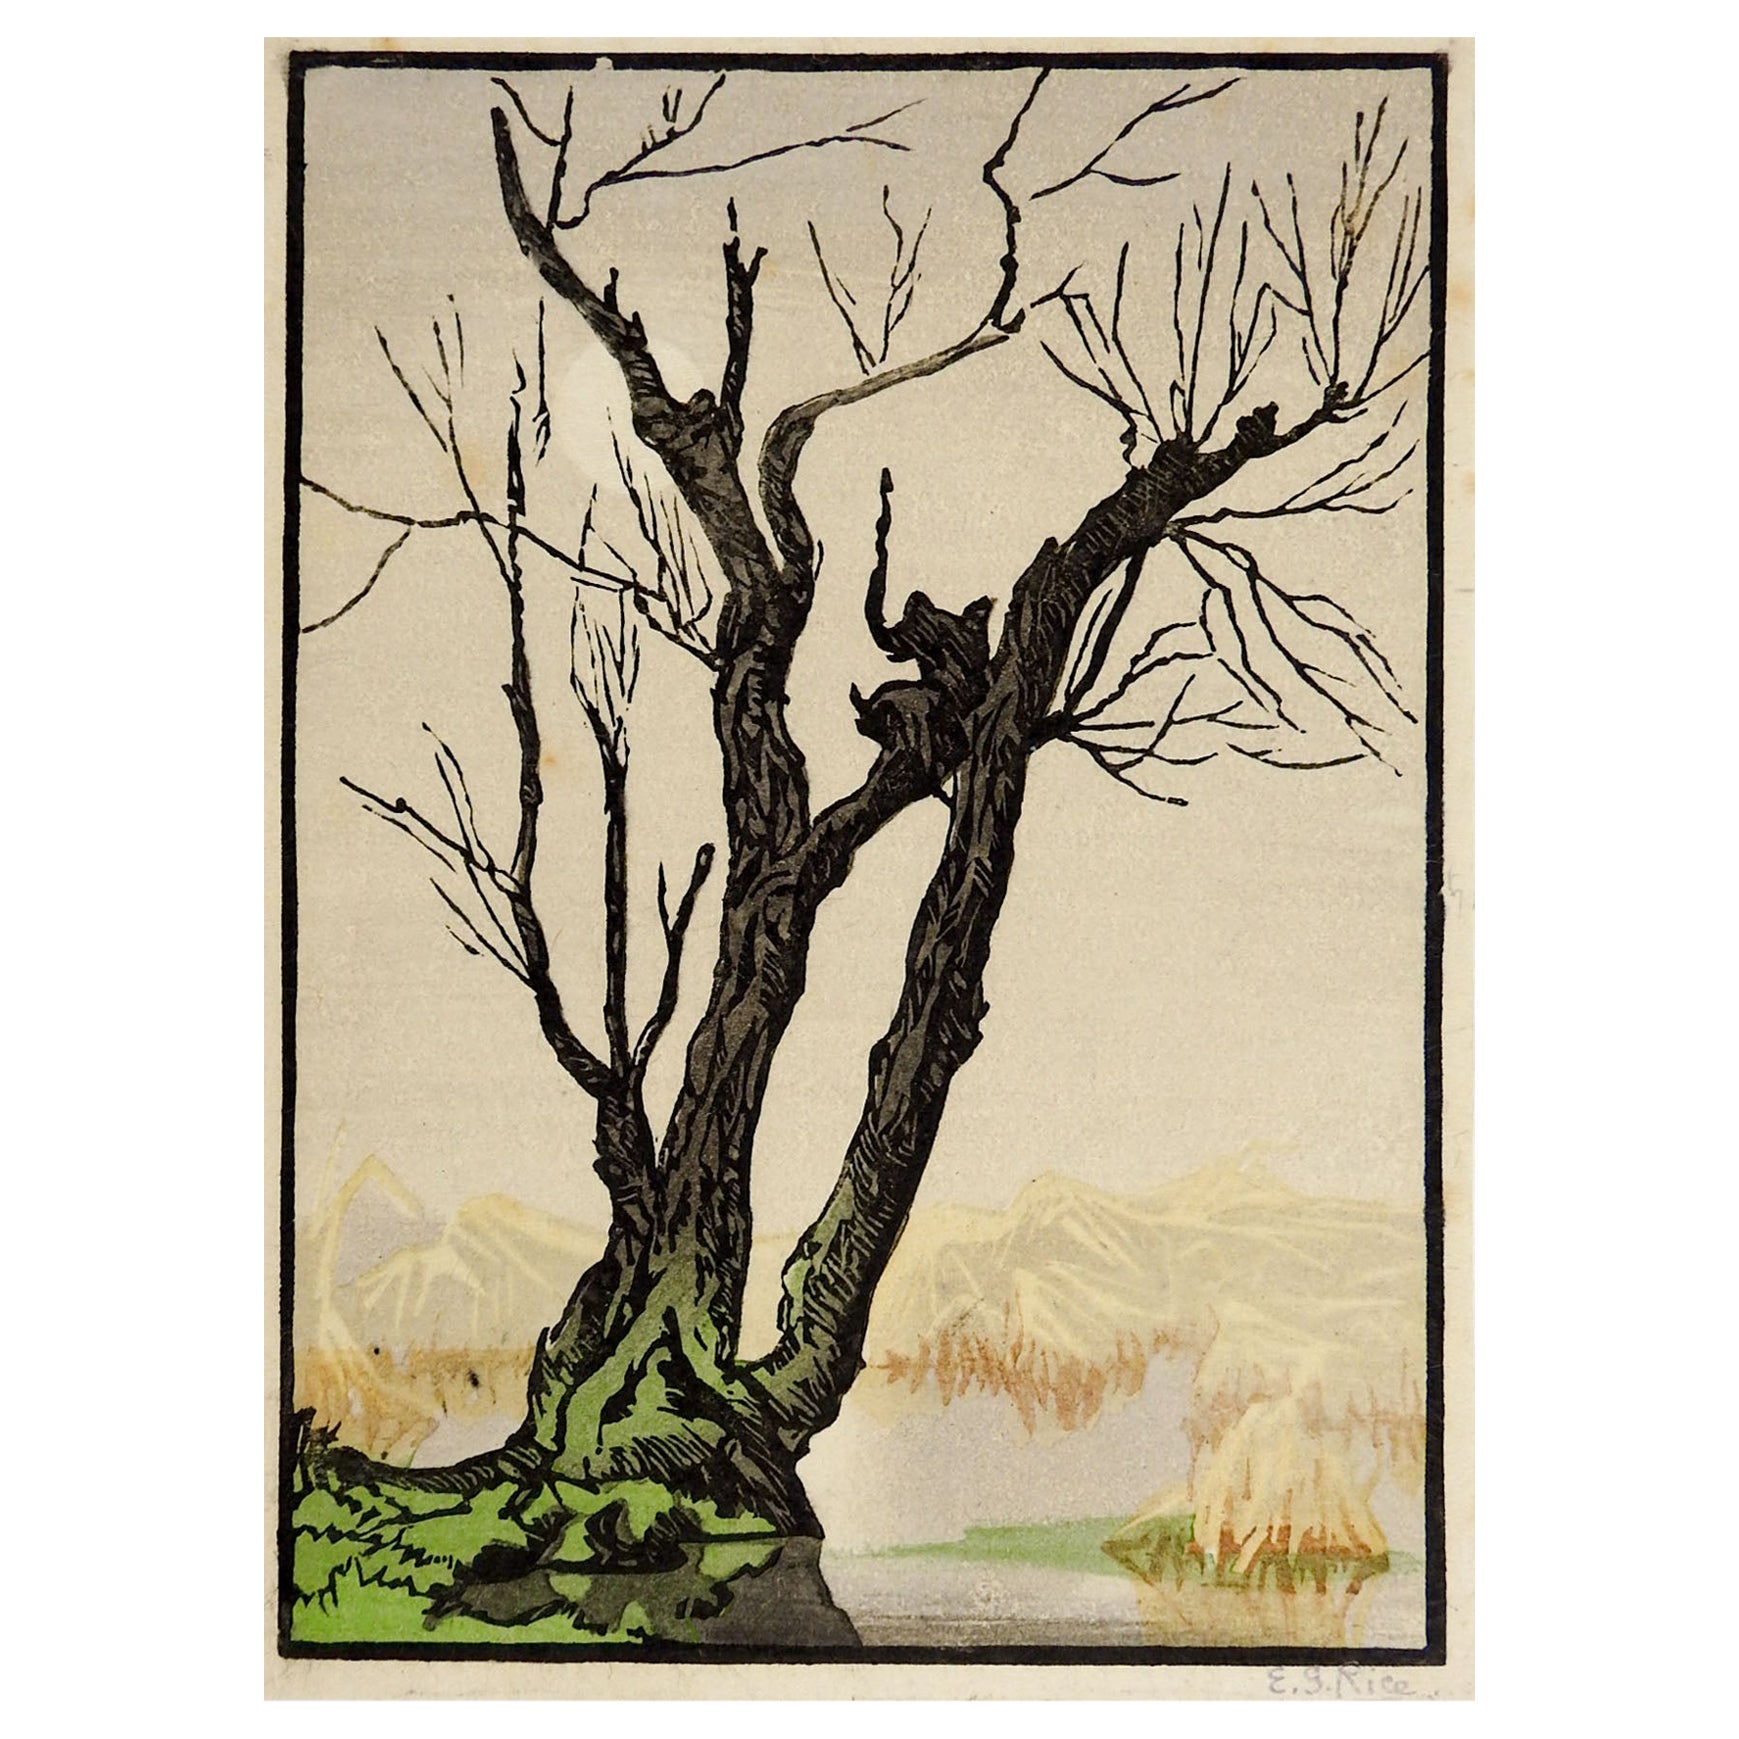 Farbholzschnitt auf Papier eines alten Baumes in den Bergen an einem nebligen Tag von Elsie Garrett Rice (1869-1923) England/Südafrika. Signiert E. G. Rice mit Bleistift am unteren rechten Rand. Ungerahmt, Randabrieb.